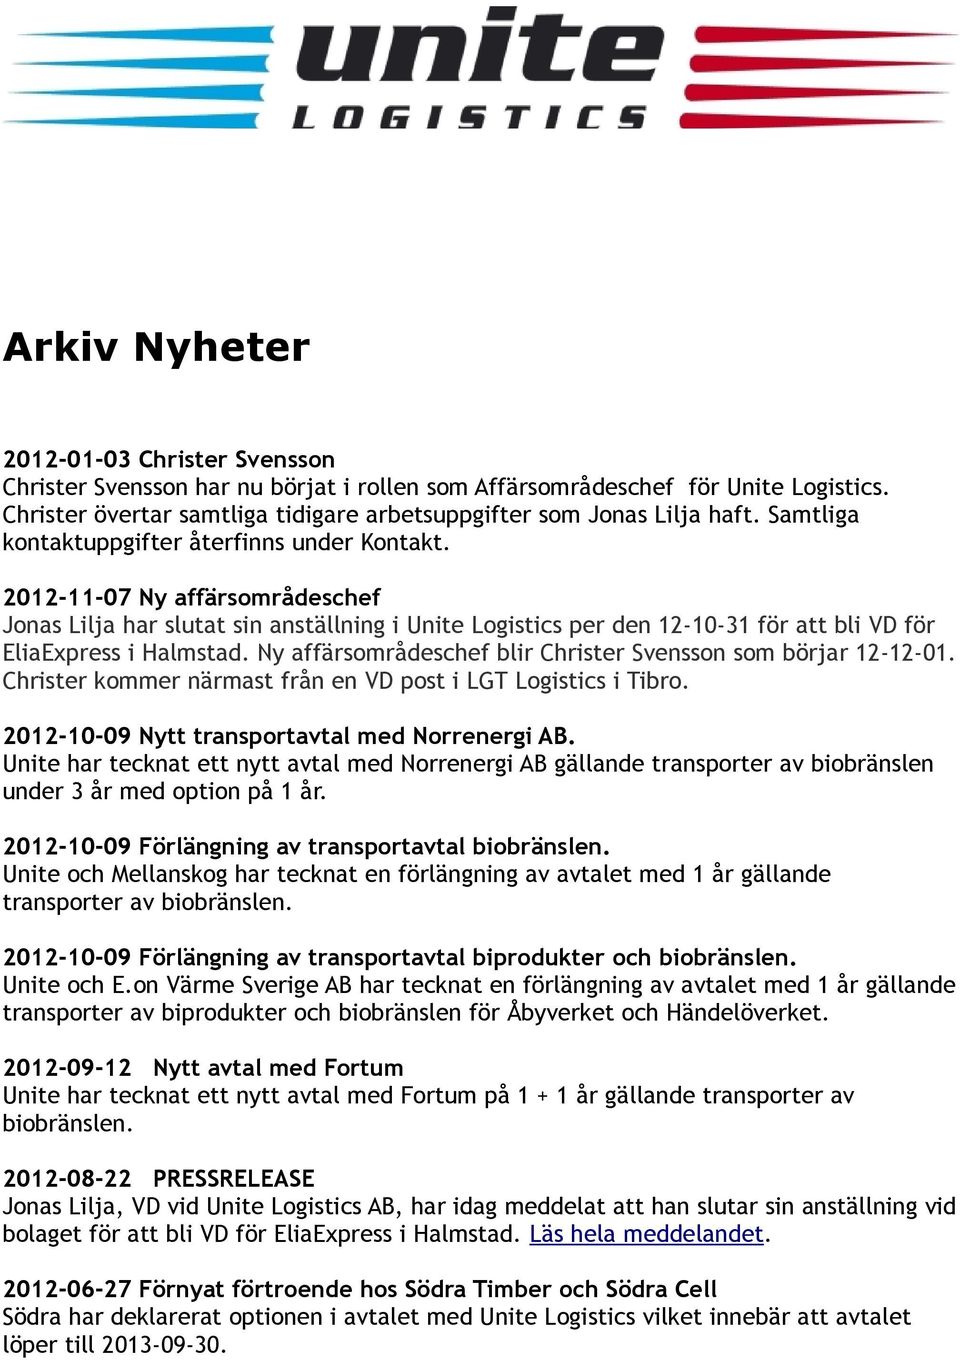 Ny affärsområdeschef blir Christer Svensson som börjar 12-12-01. Christer kommer närmast från en VD post i LGT Logistics i Tibro. 2012-10-09 Nytt transportavtal med Norrenergi AB.